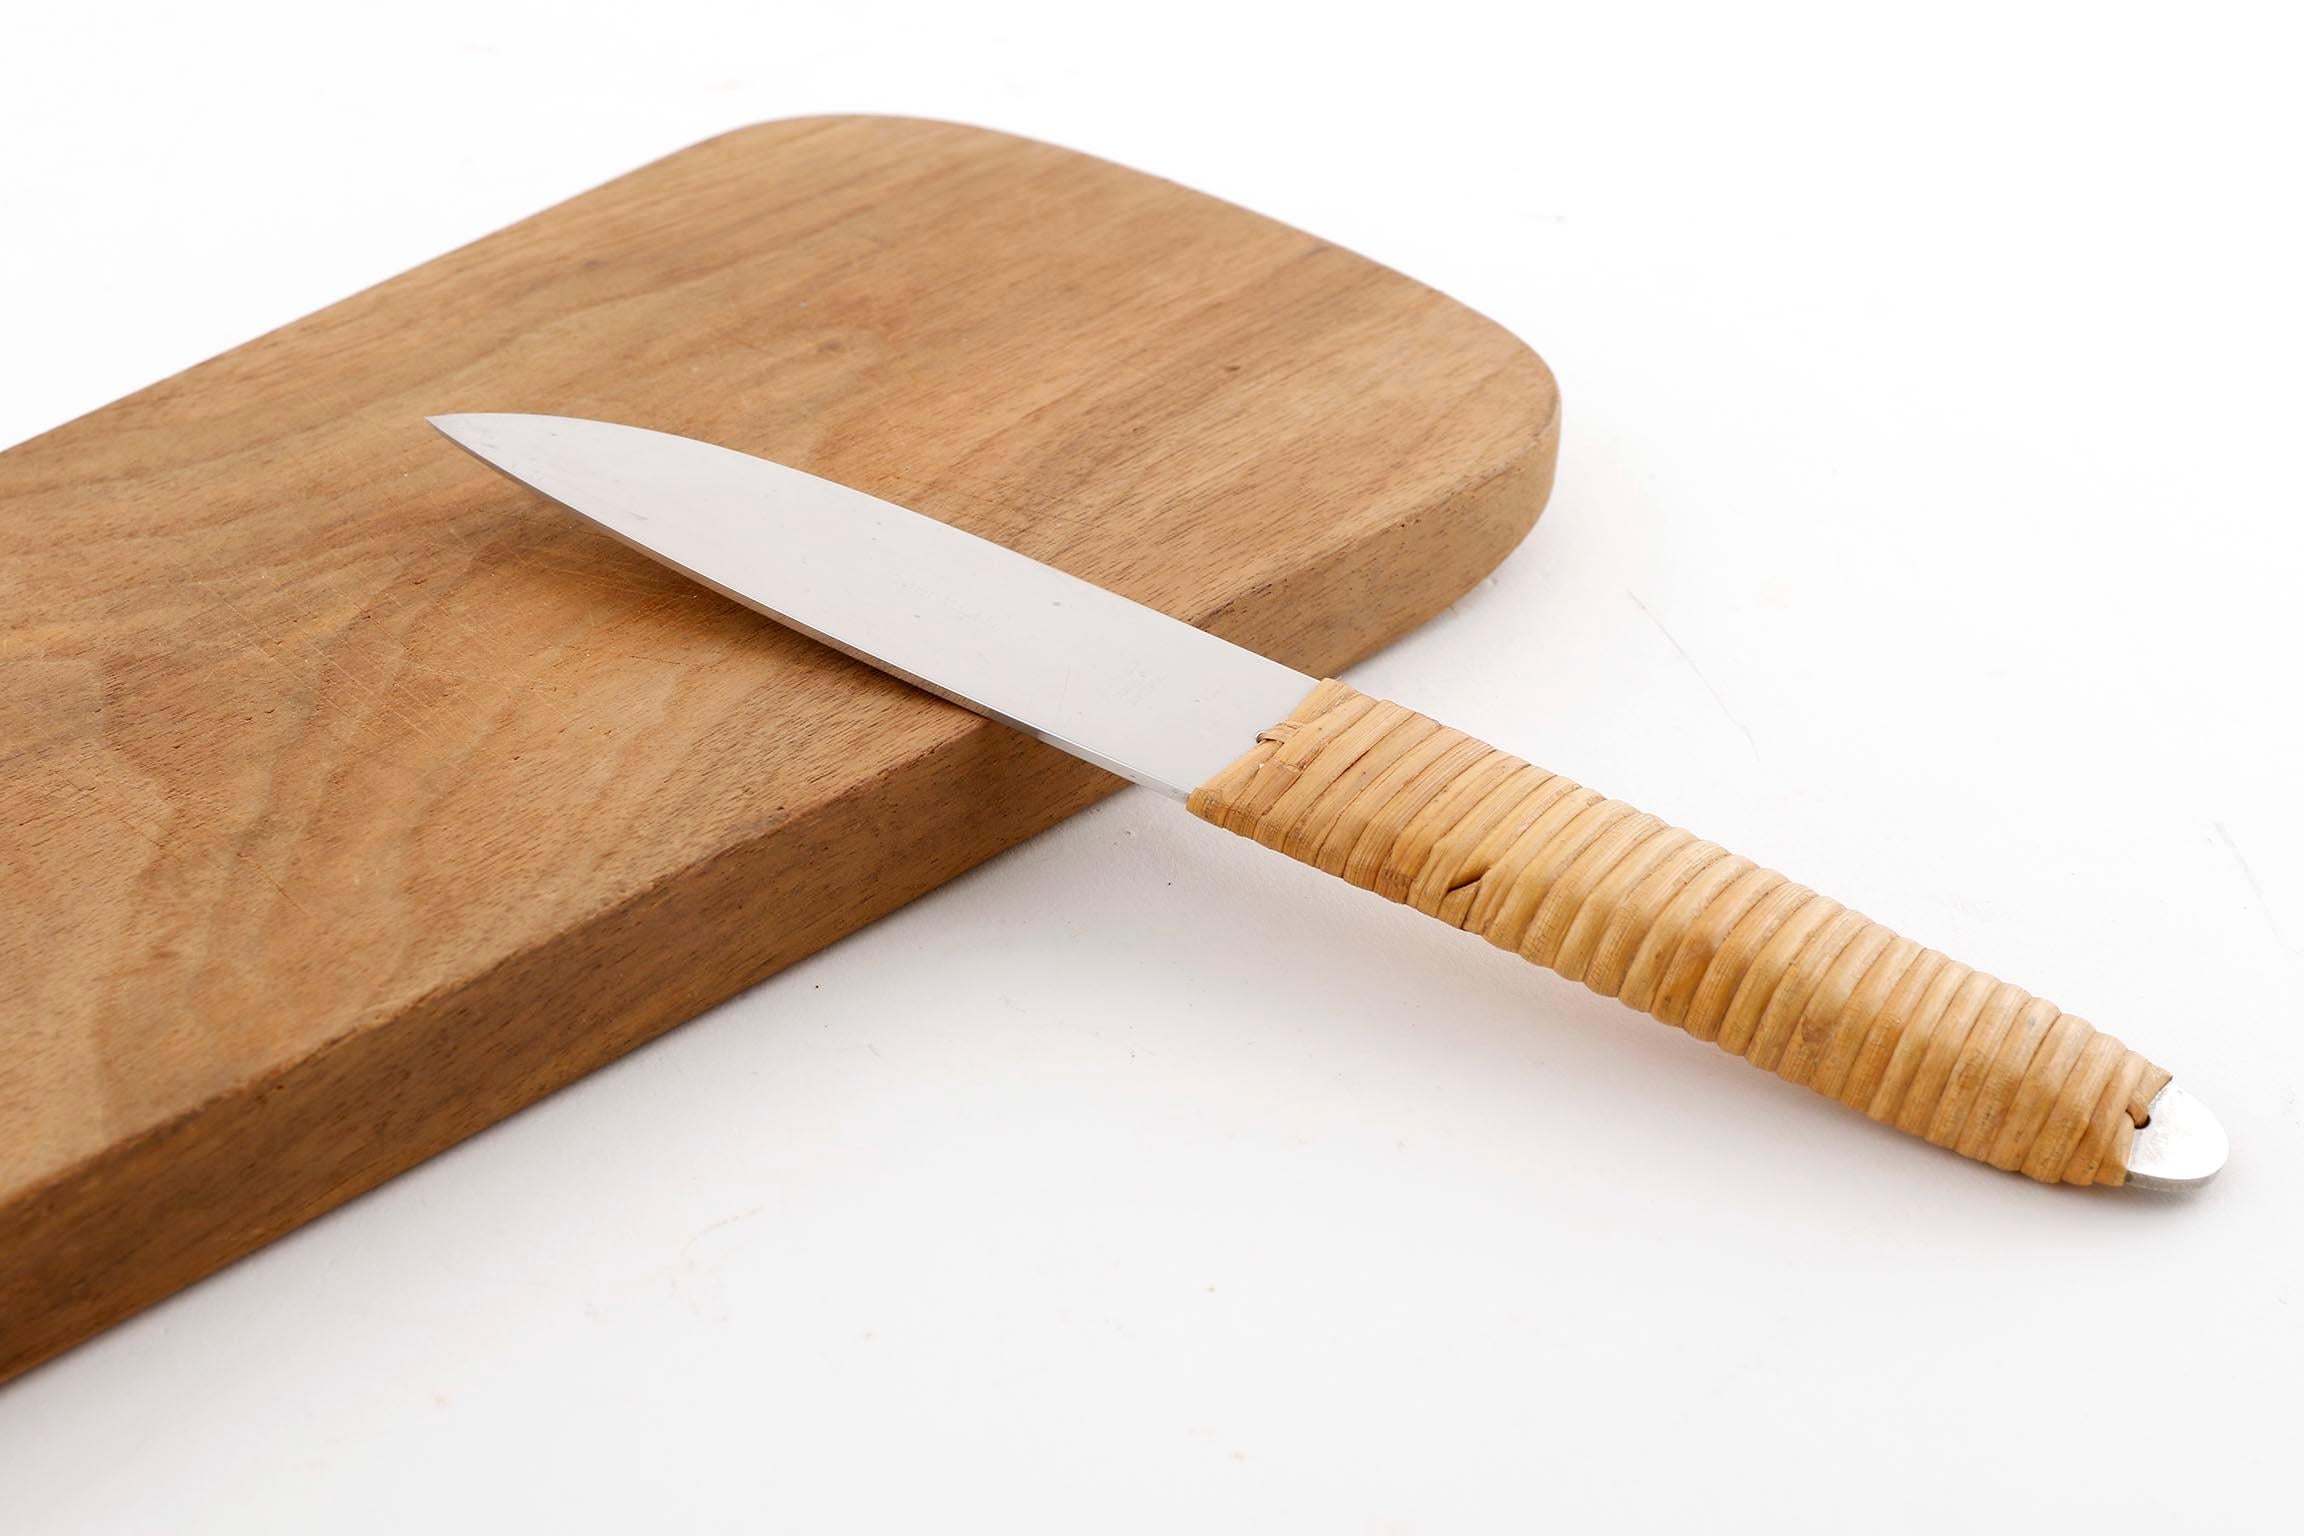 Walnut Carl Auböck Knife Cutting Chopping Board, Wood Wicker Stainless Steel, 1950s For Sale